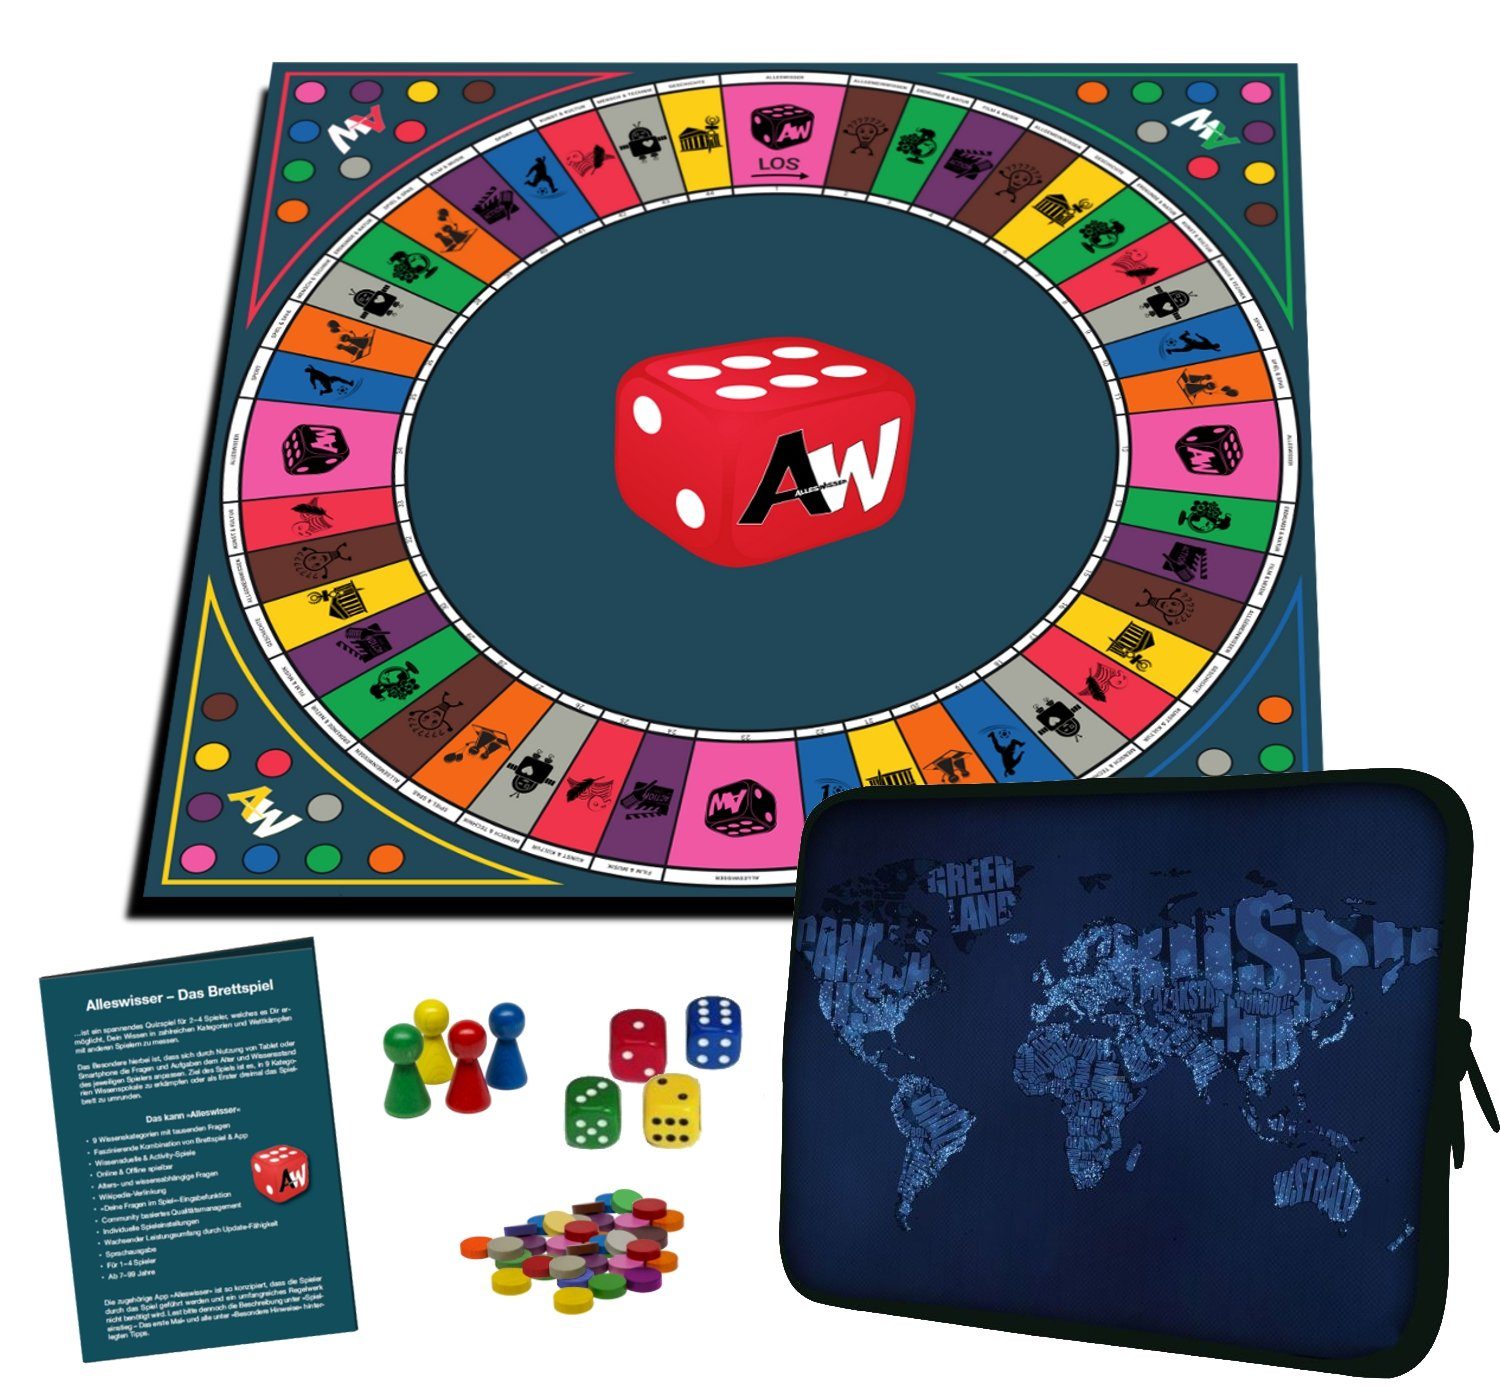 ALLESWISSER Spiel, Alleswisser - Das Brettspiel Interaktives Quiz-, Wissens-, Familienspiel mit App für iOS & Android Erdkunde Länder